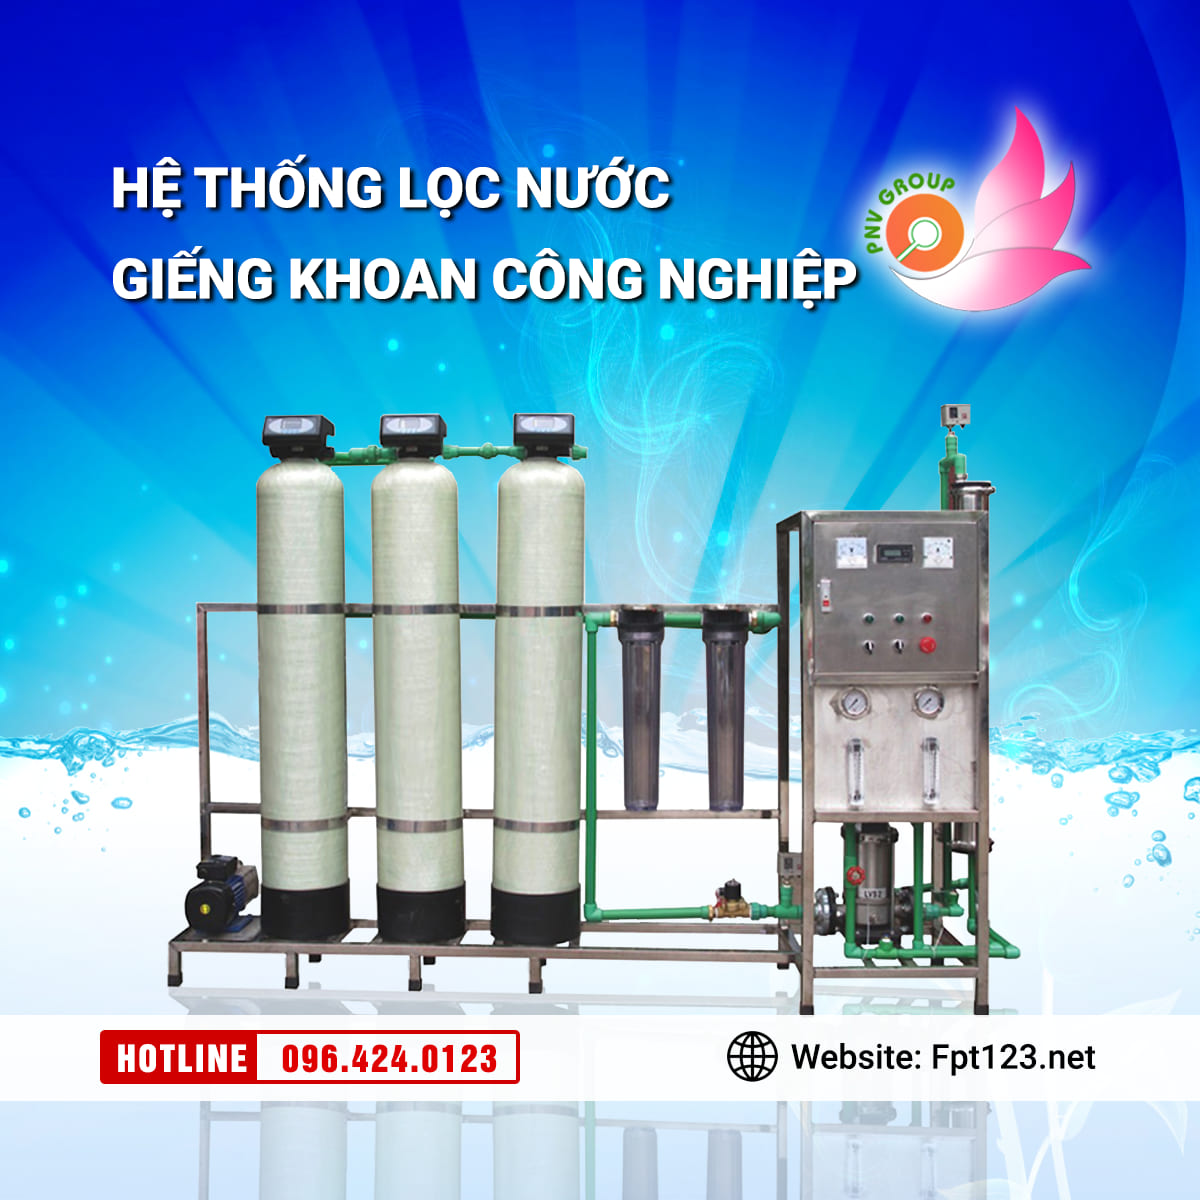 Lắp đặt hệ thống lọc nước giếng khoan tại Quảng Nam